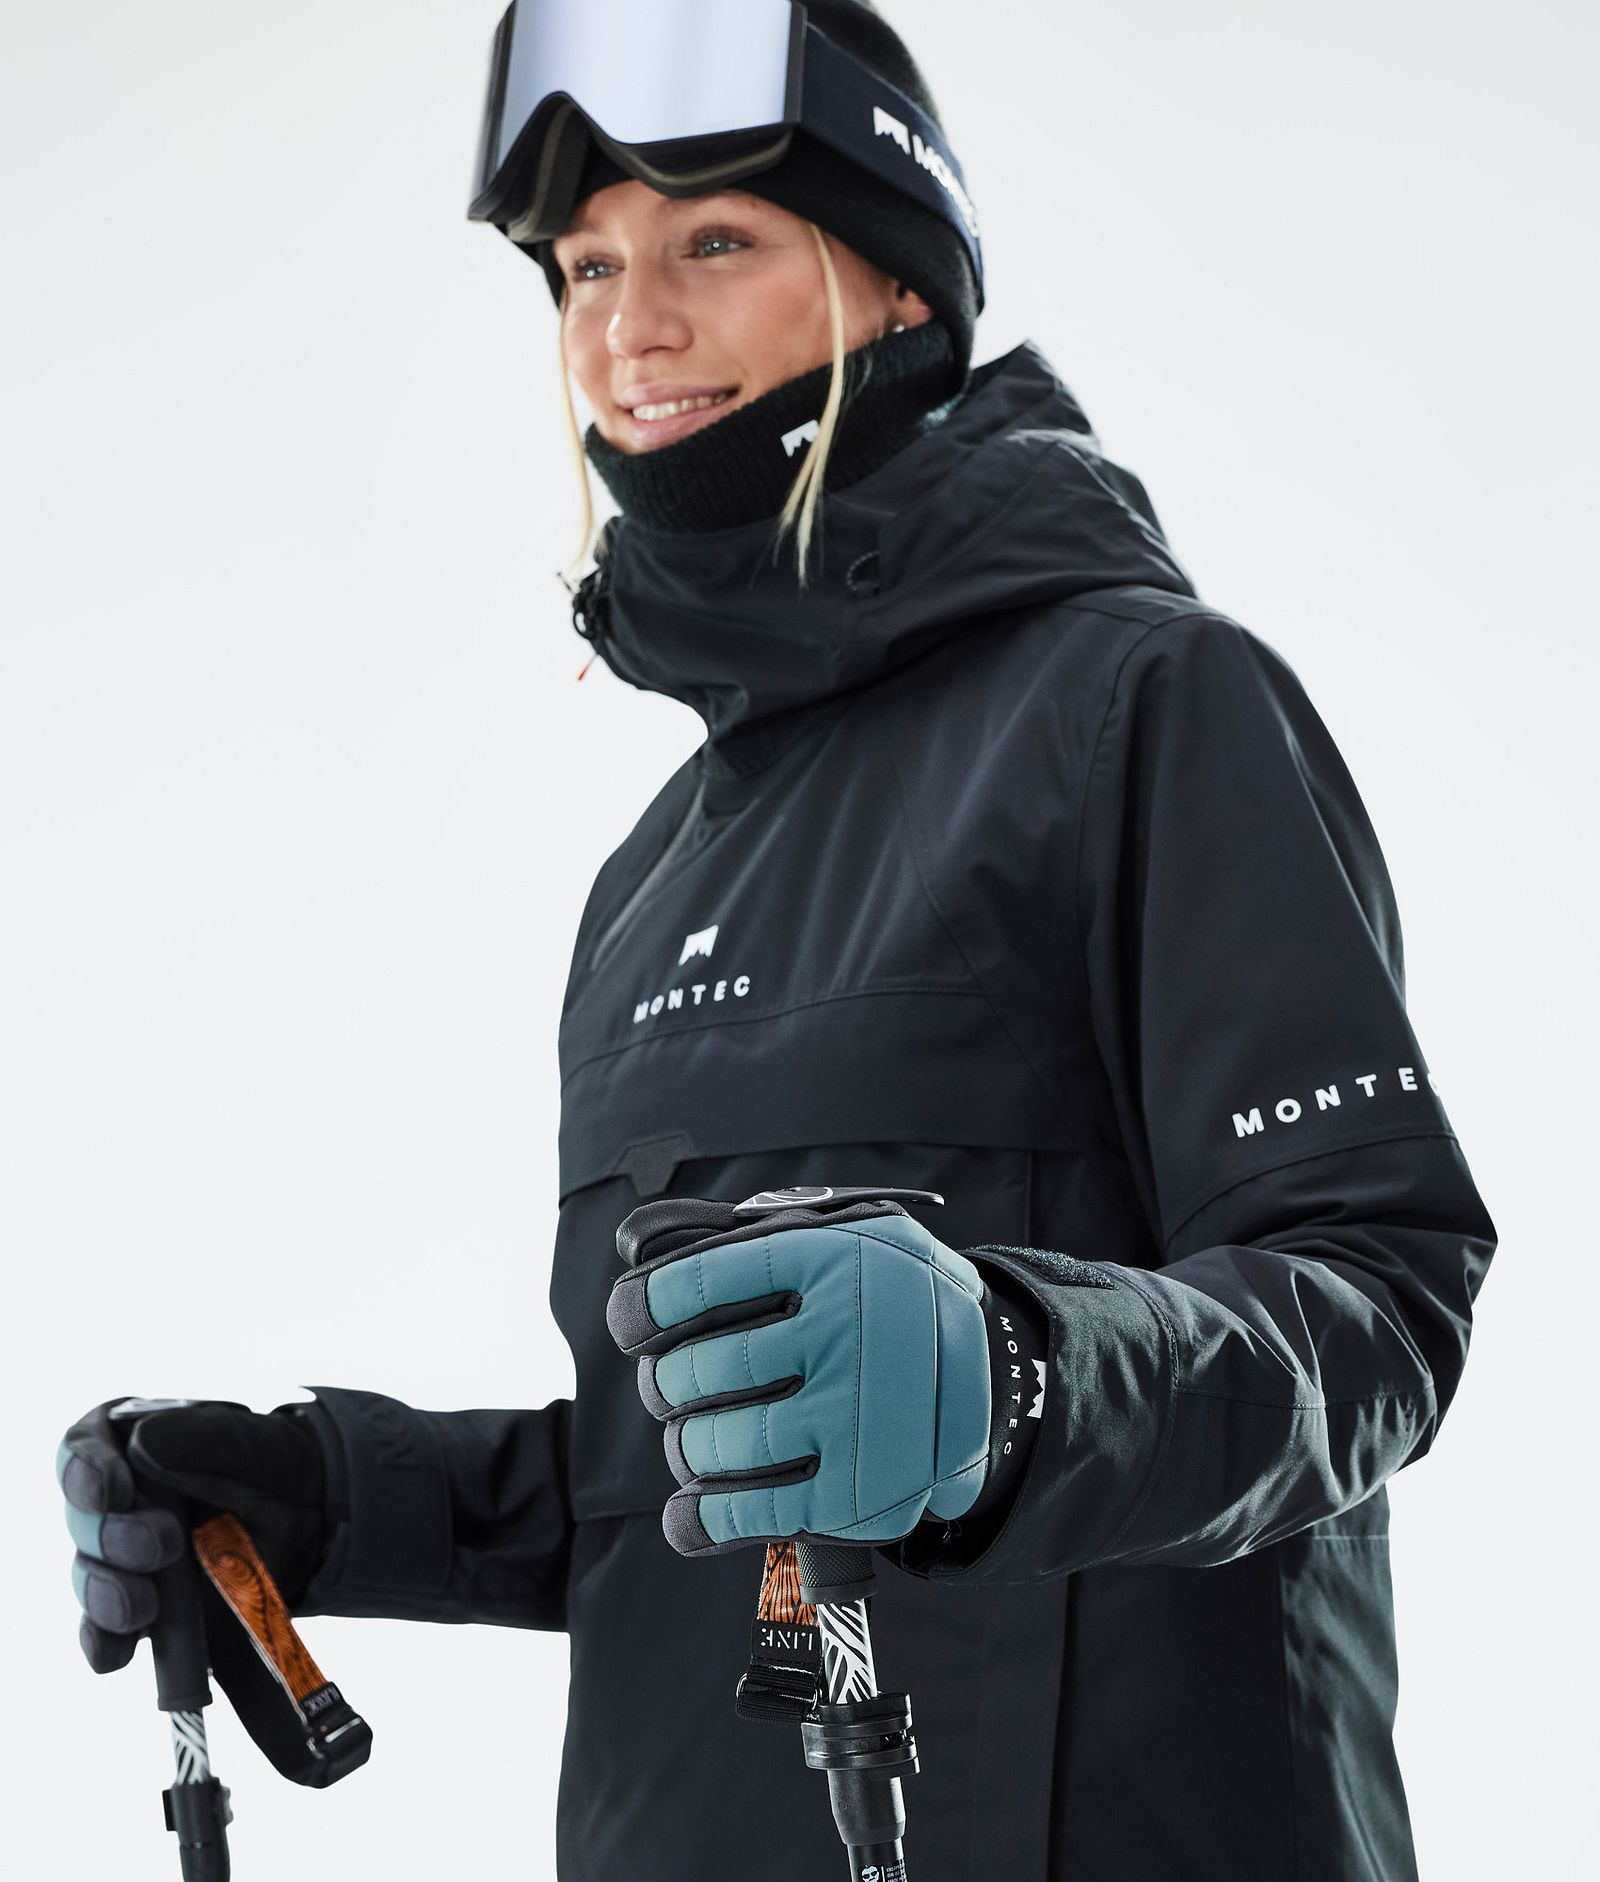 Kilo 2022 Ski Gloves Atlantic, Image 4 of 5